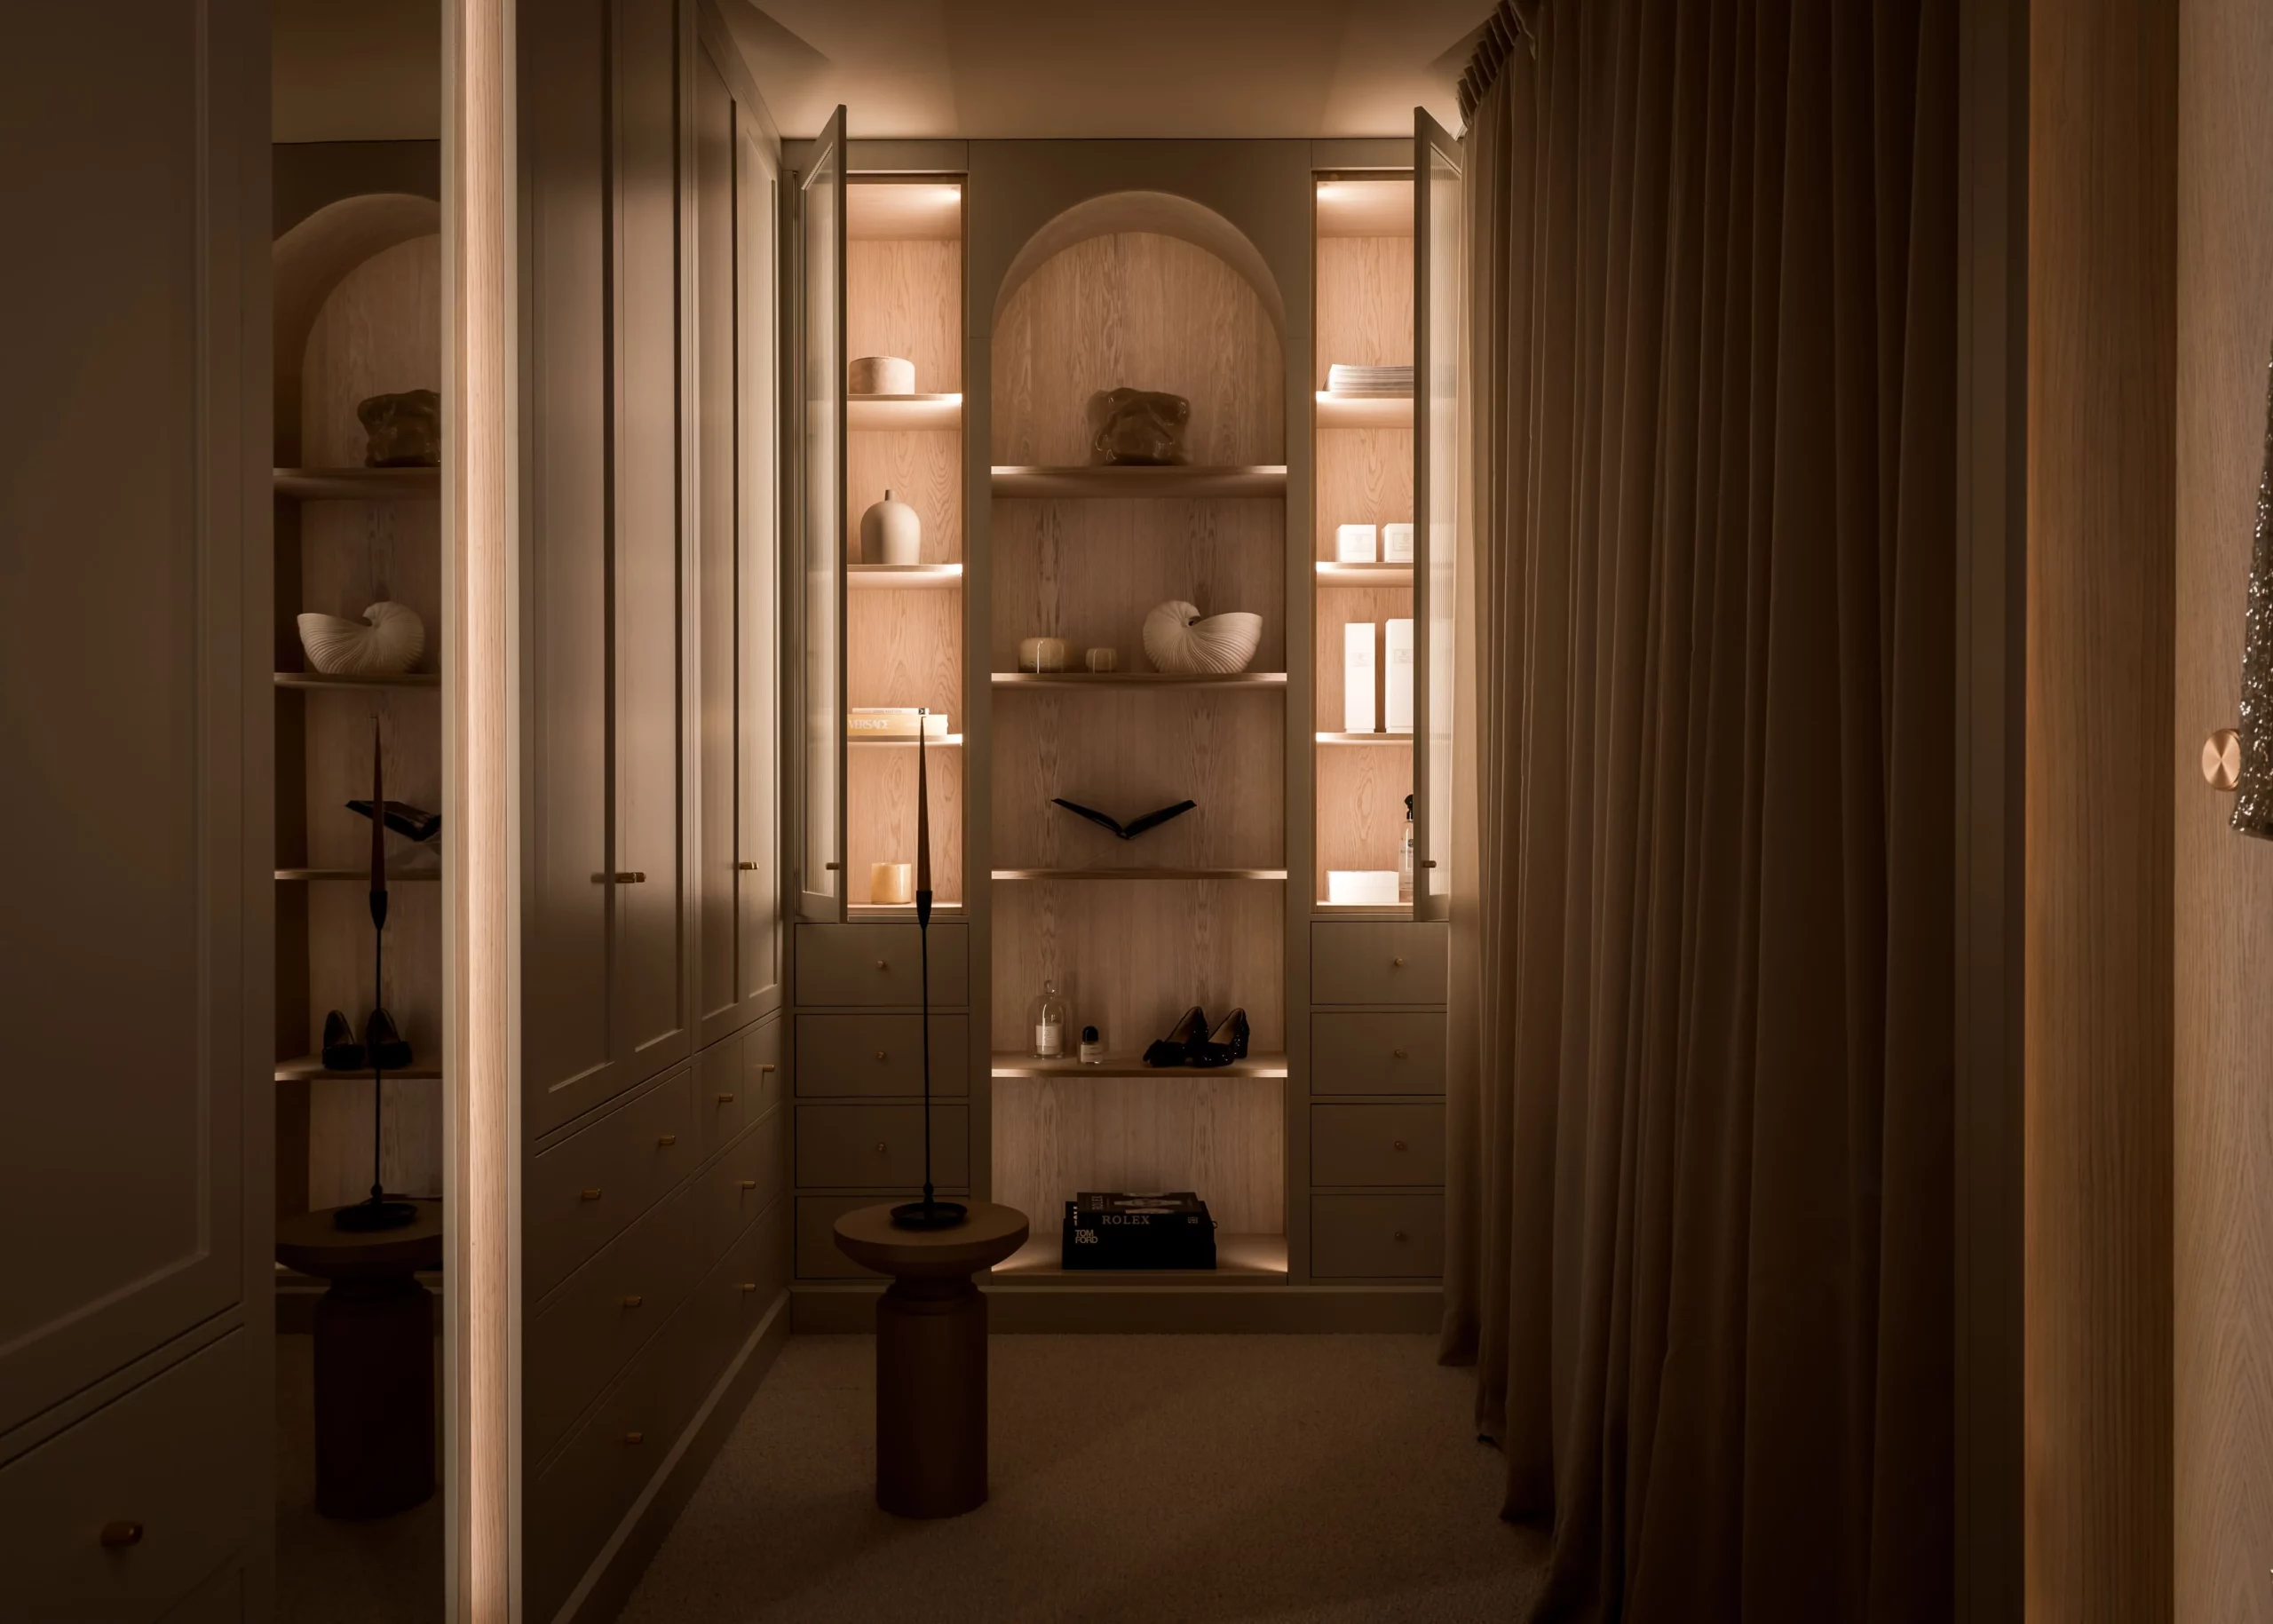 Stiligt - En bild av en garderob med inbyggda hyllor.